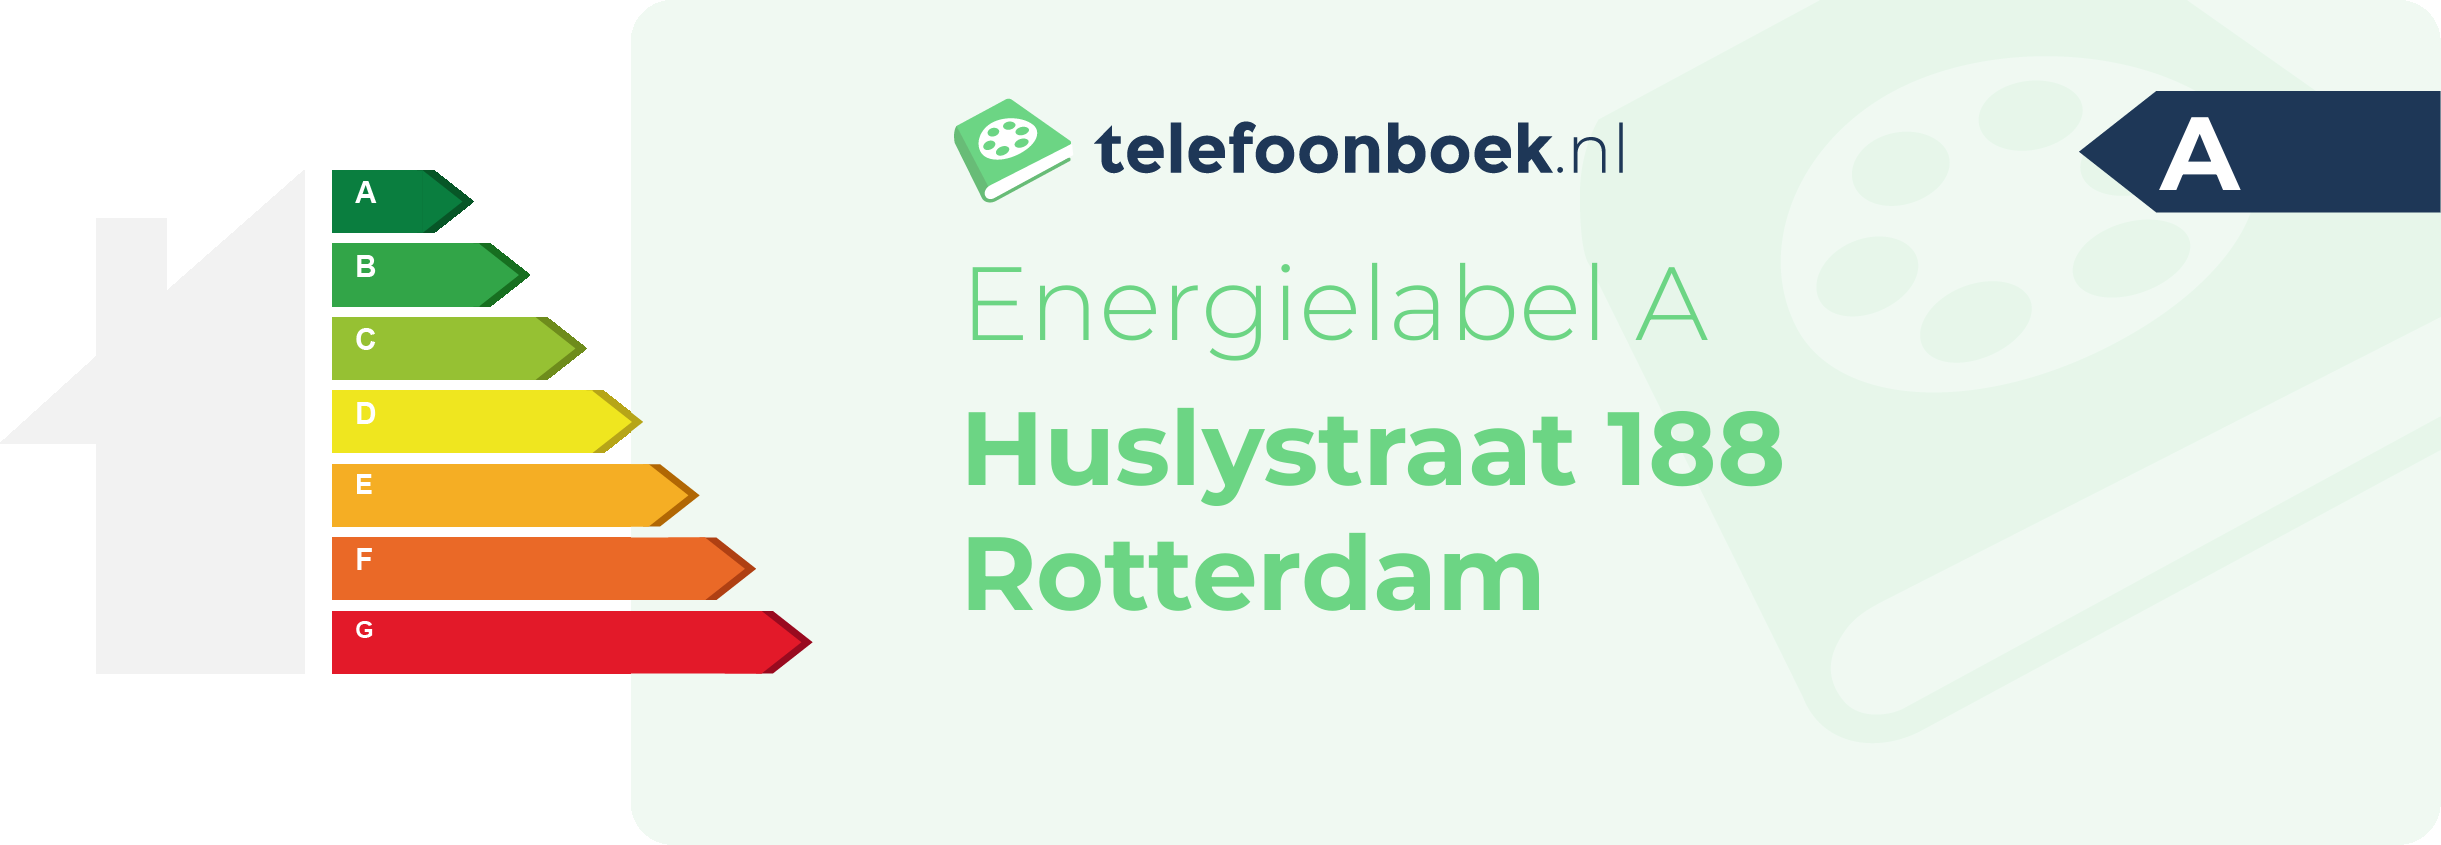 Energielabel Huslystraat 188 Rotterdam